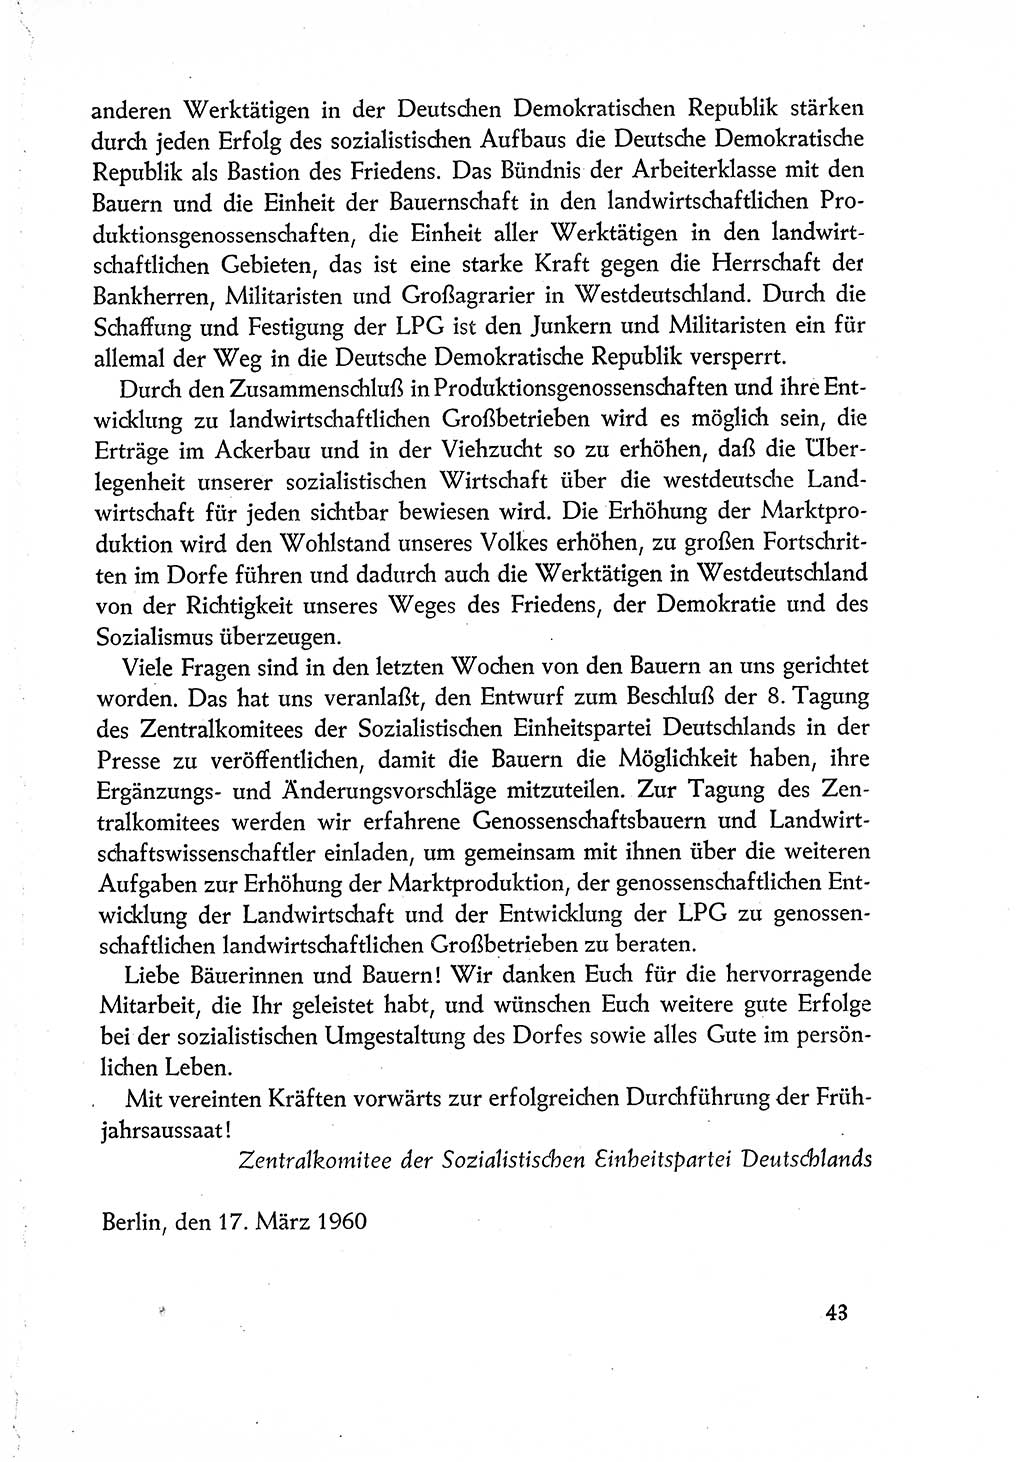 Dokumente der Sozialistischen Einheitspartei Deutschlands (SED) [Deutsche Demokratische Republik (DDR)] 1960-1961, Seite 43 (Dok. SED DDR 1960-1961, S. 43)